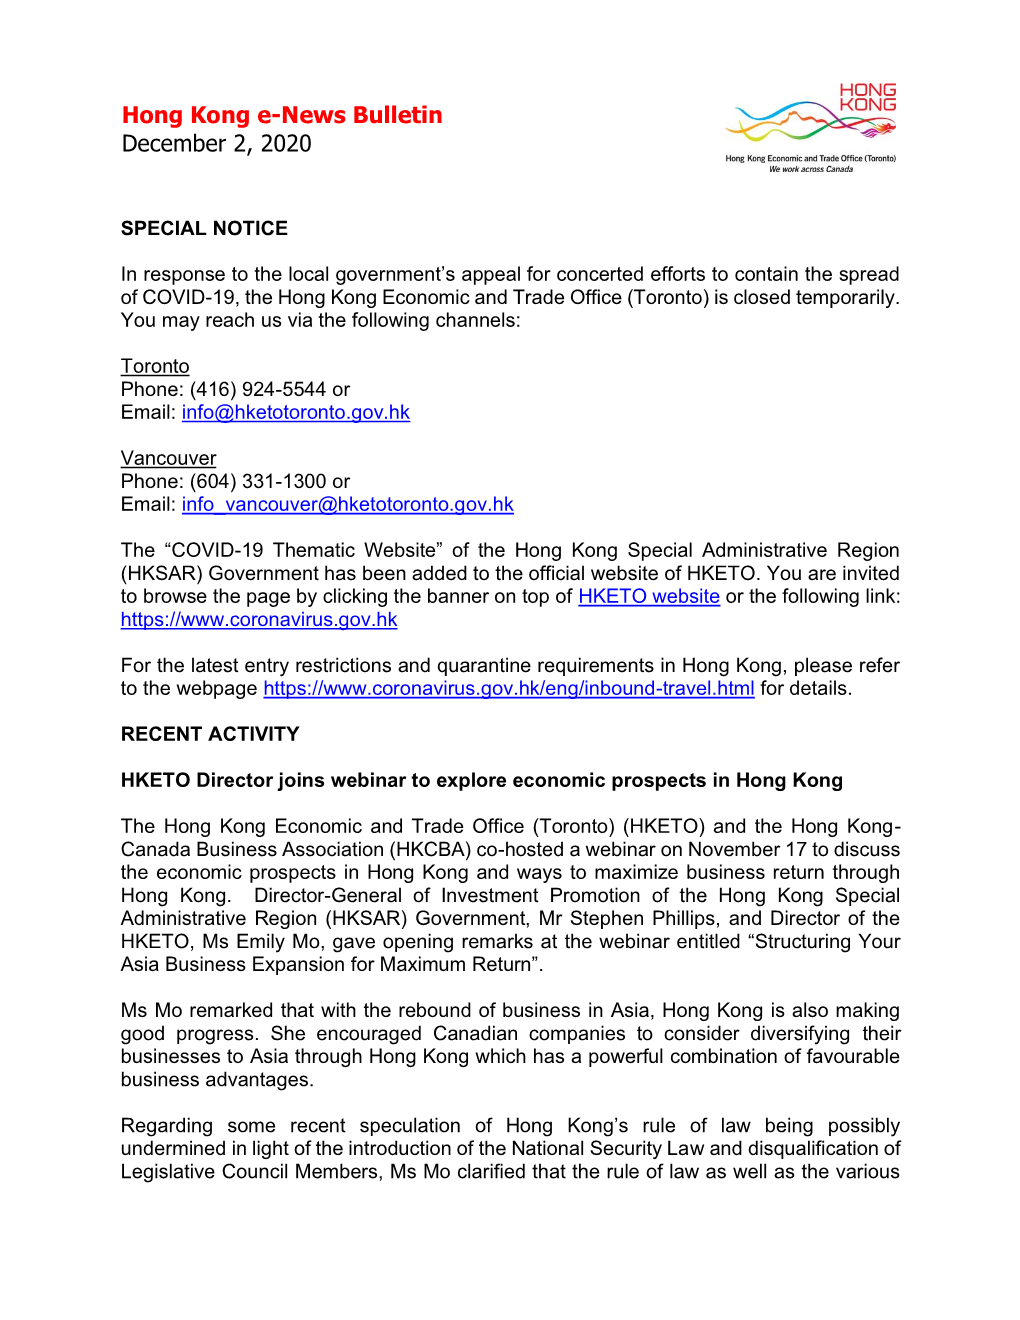 Hong Kong E-News Bulletin December 2, 2020